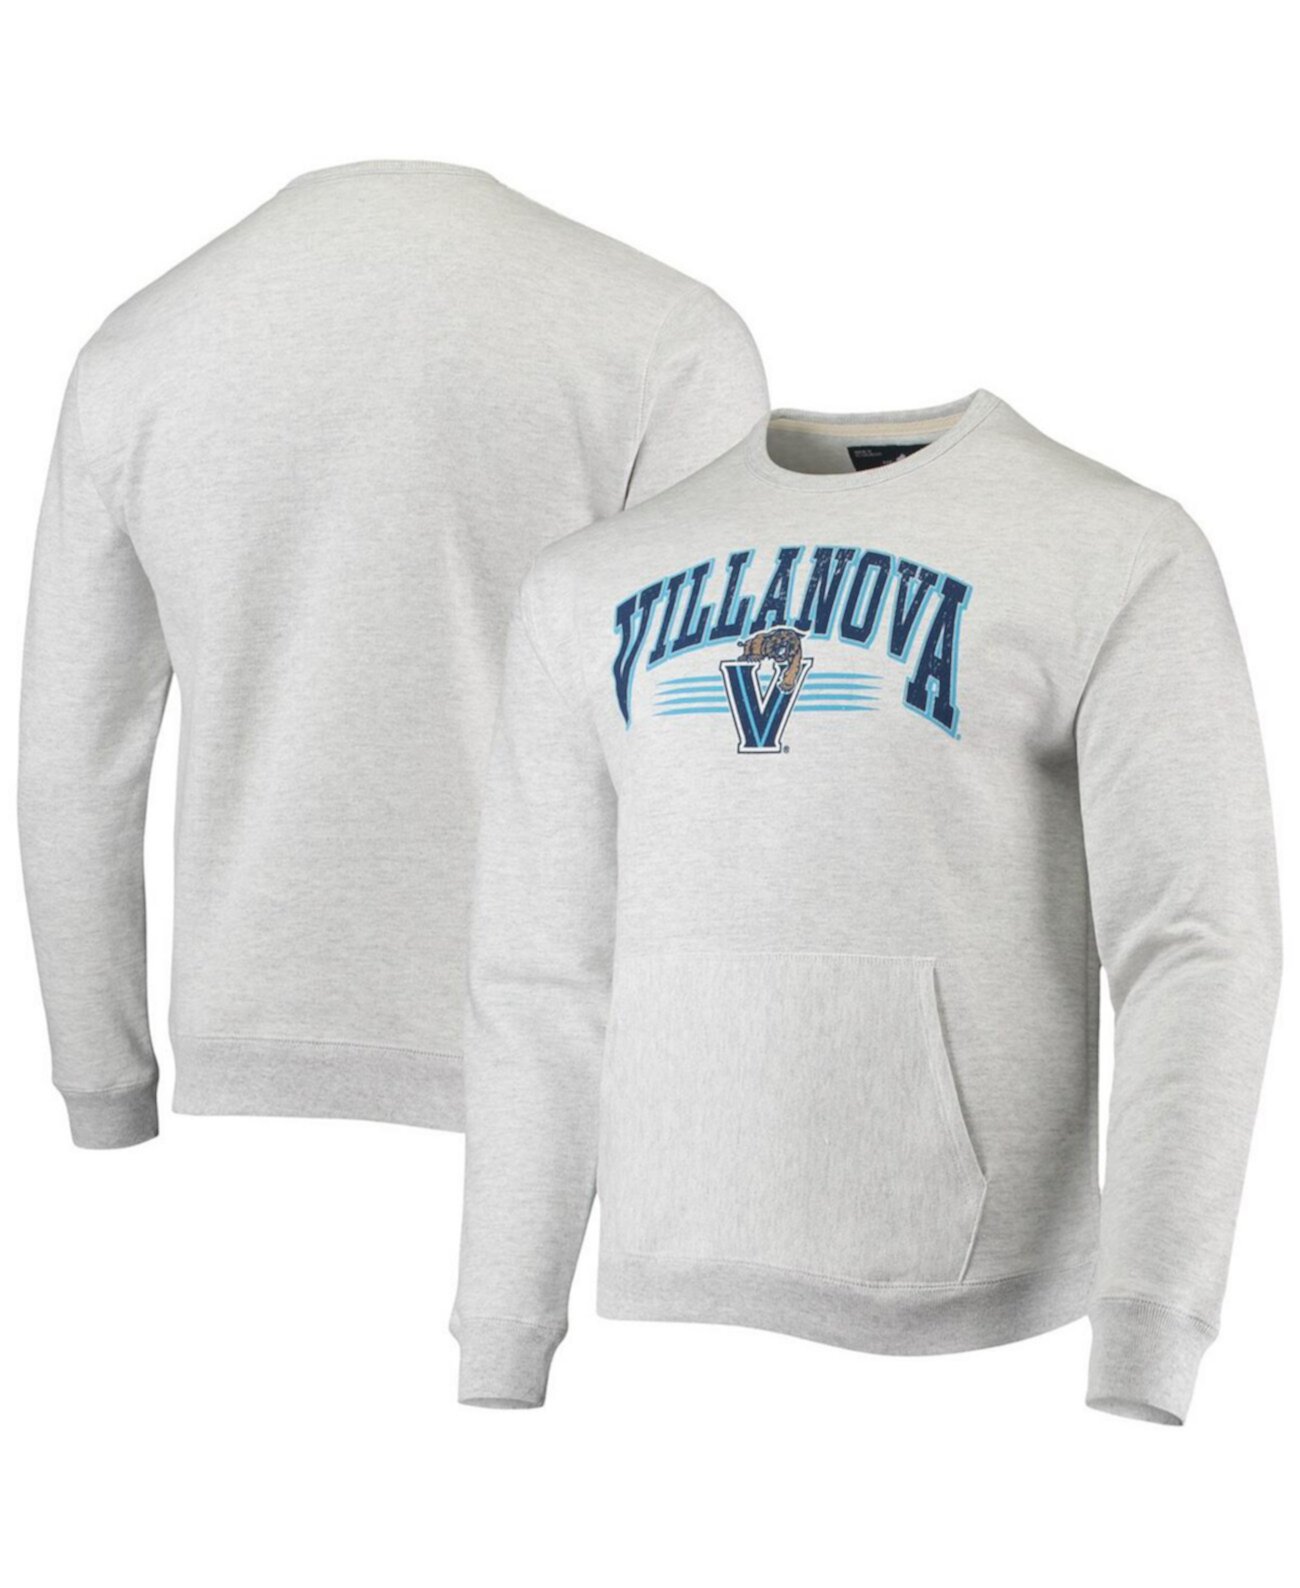 Мужская серая меланжевая толстовка Villanova Wildcats Upperclassman Pocket Pullover Sweatshirt League Collegiate Wear